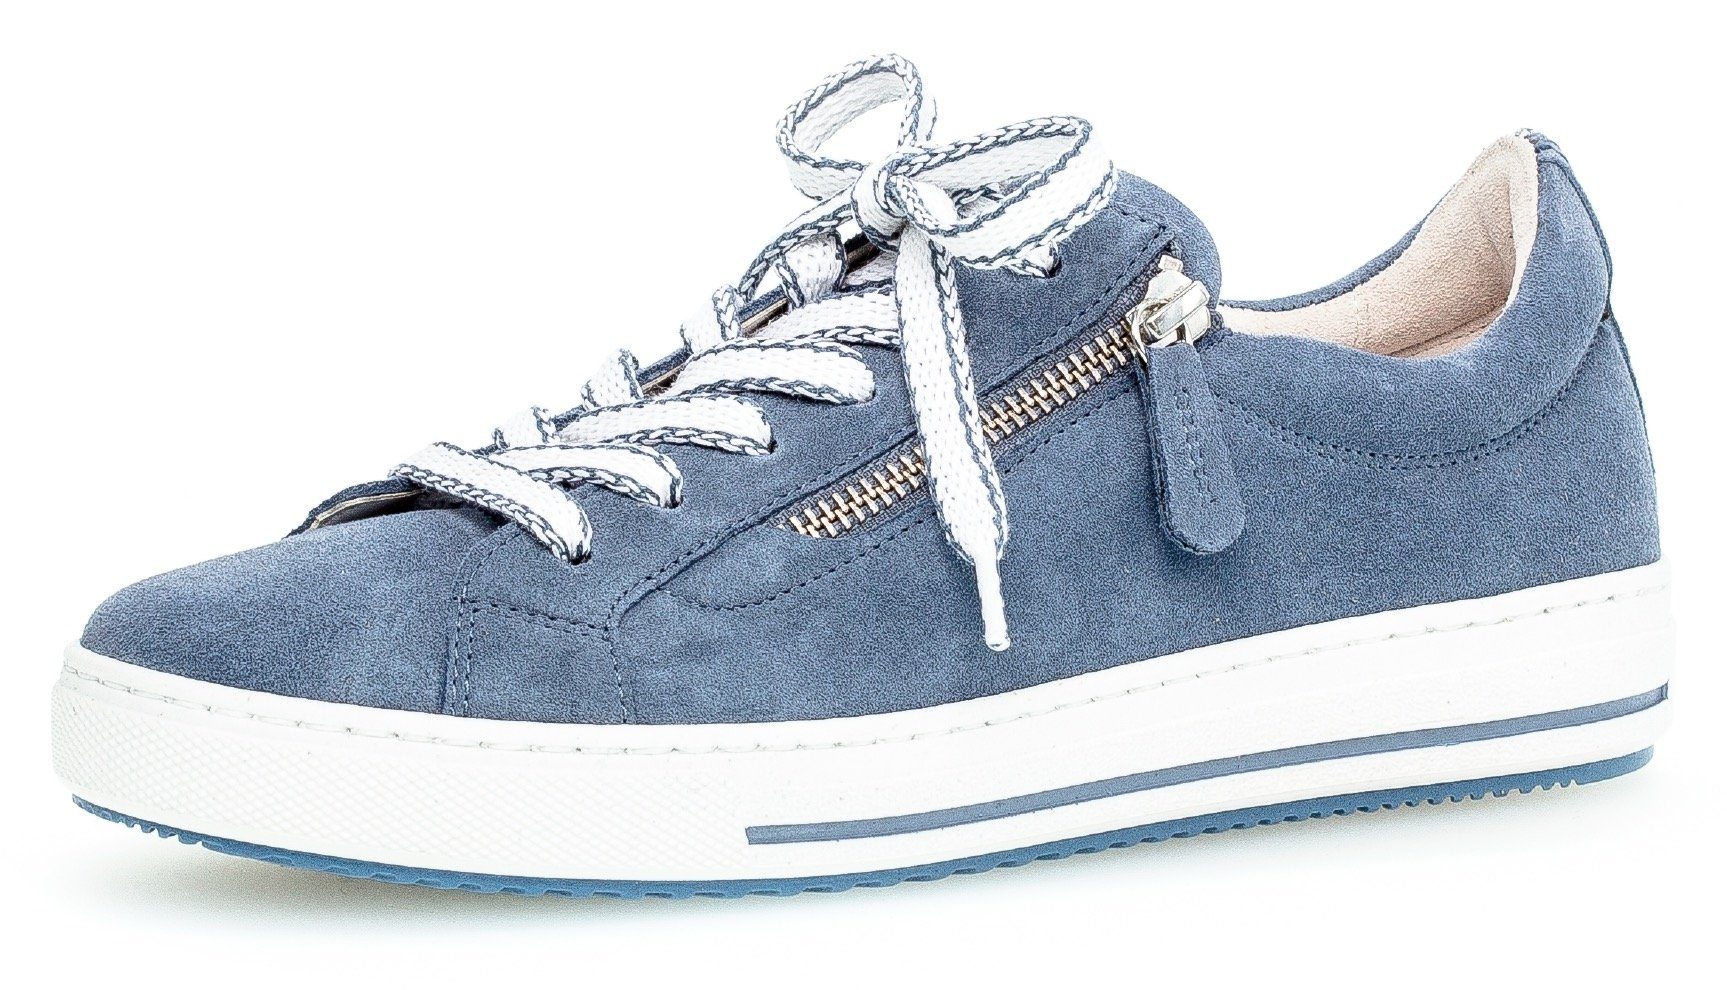 Blaue Gabor Schuhe online kaufen | OTTO